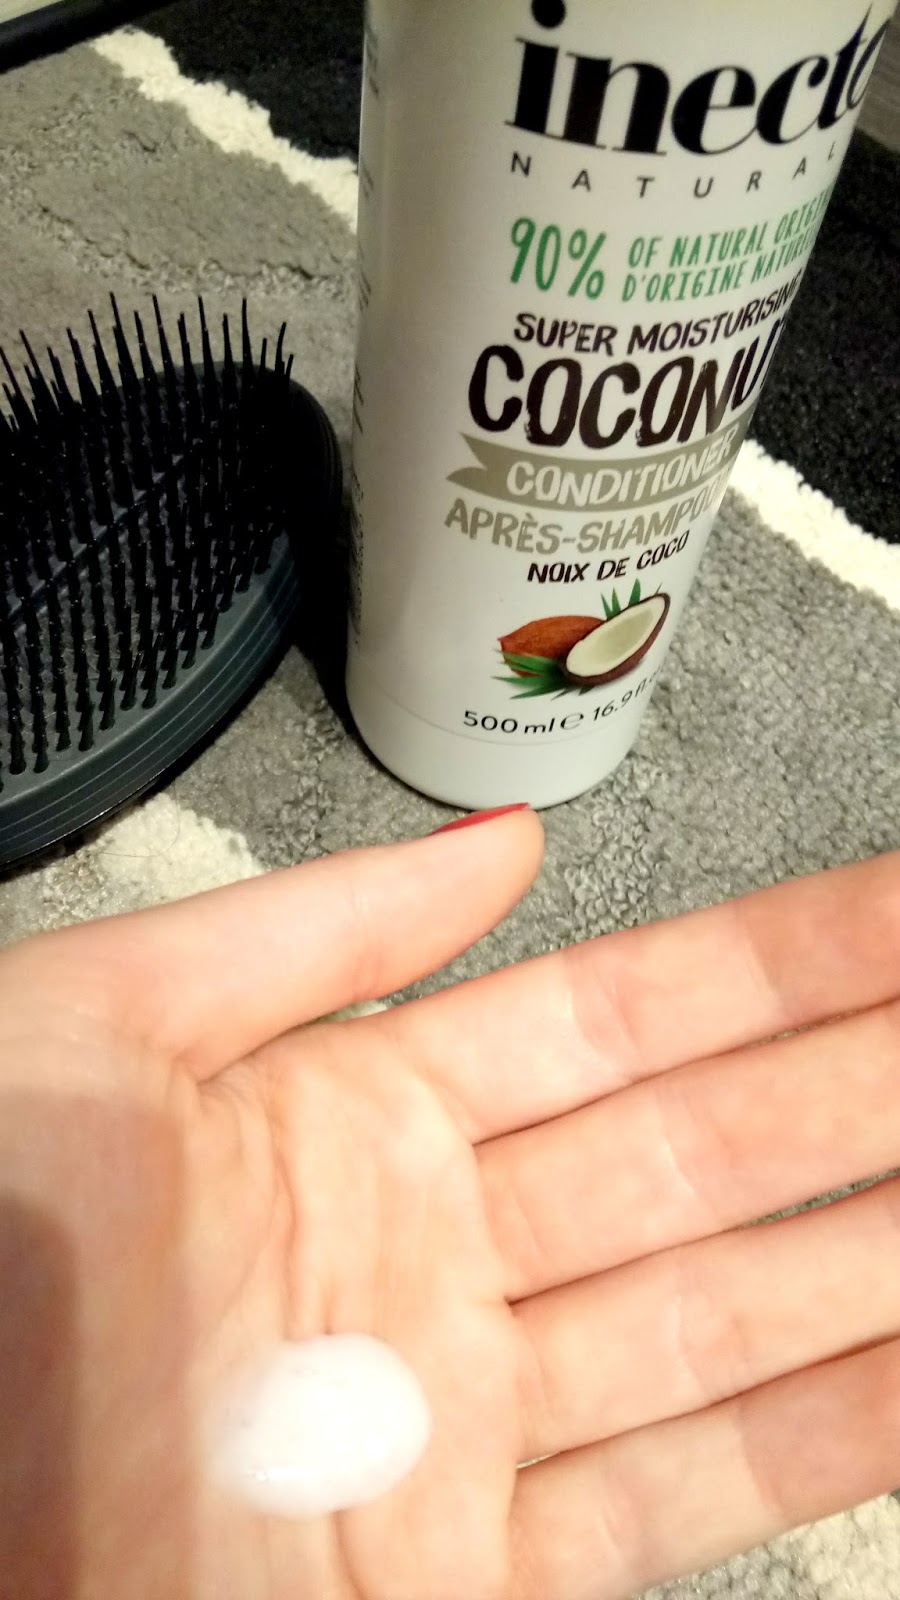 odżywka do włosów inecto pure coconut oil